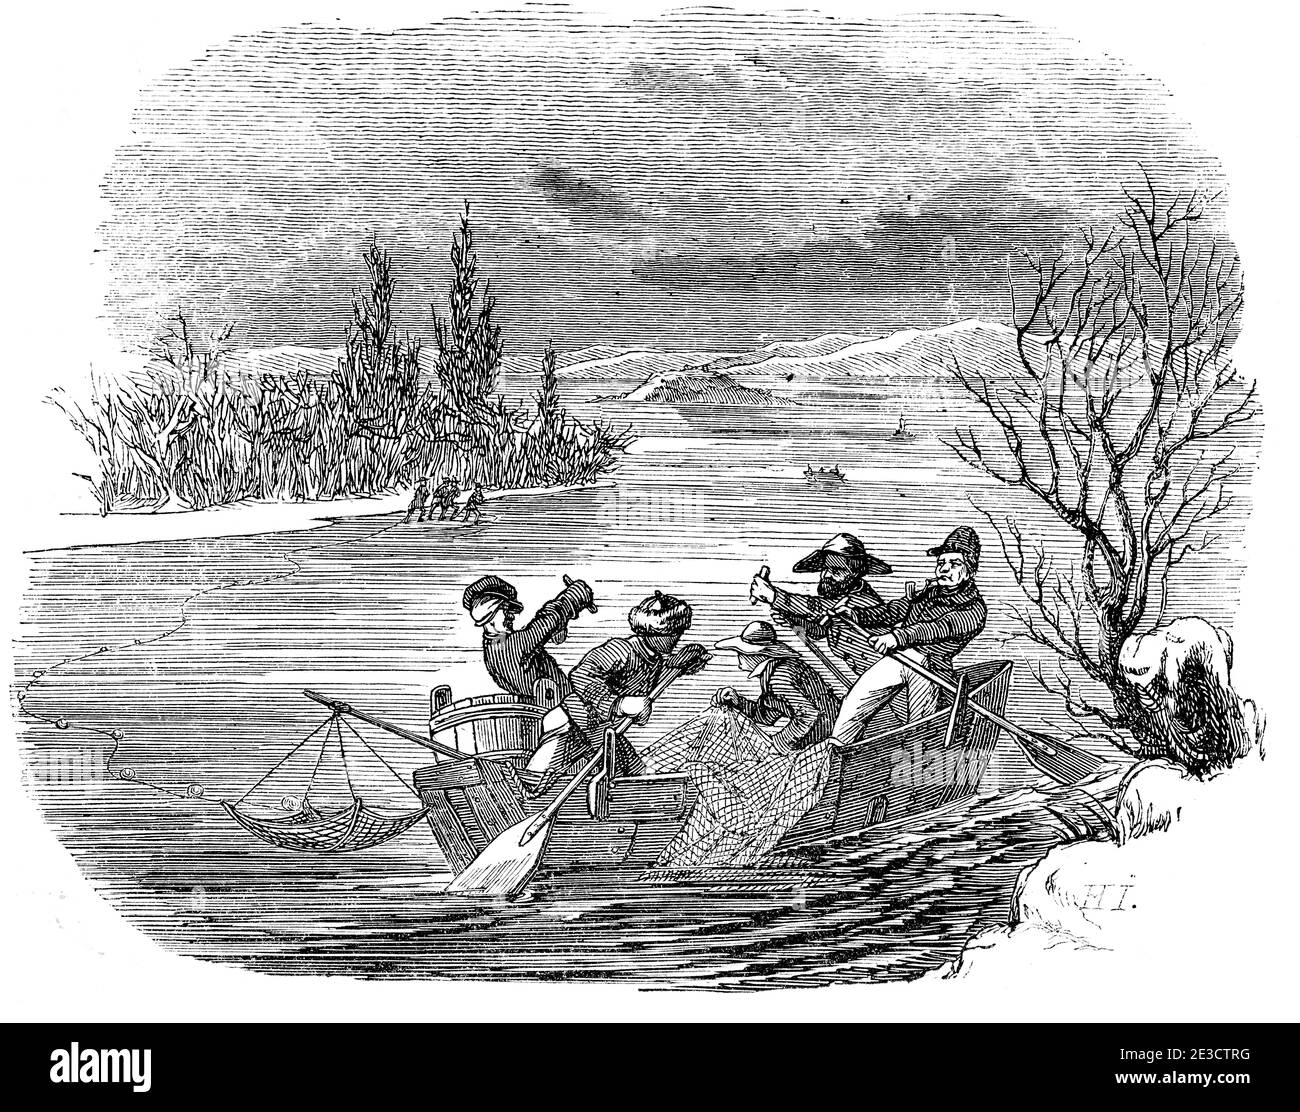 Calendario Suizo con una historia sobre pescadores y mujeres en el Lago Constanza y coreesponding Motives, St. Gallen Suiza 1853 Foto de stock